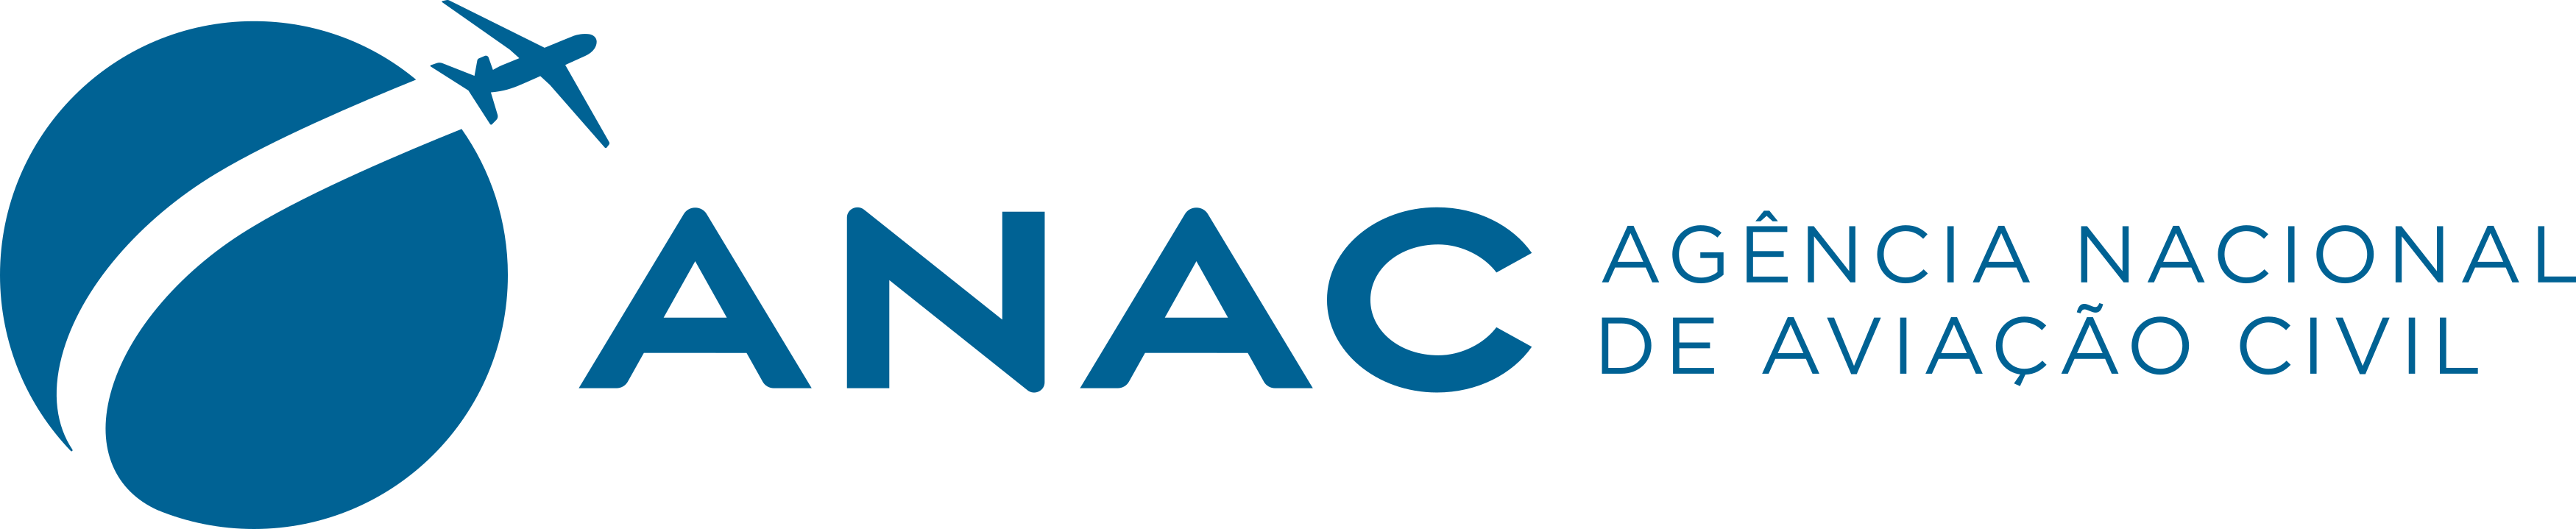 ANAC Logo – Agência Nacional de Aviação Civil Logo - PNG e Vetor - Download  de Logo